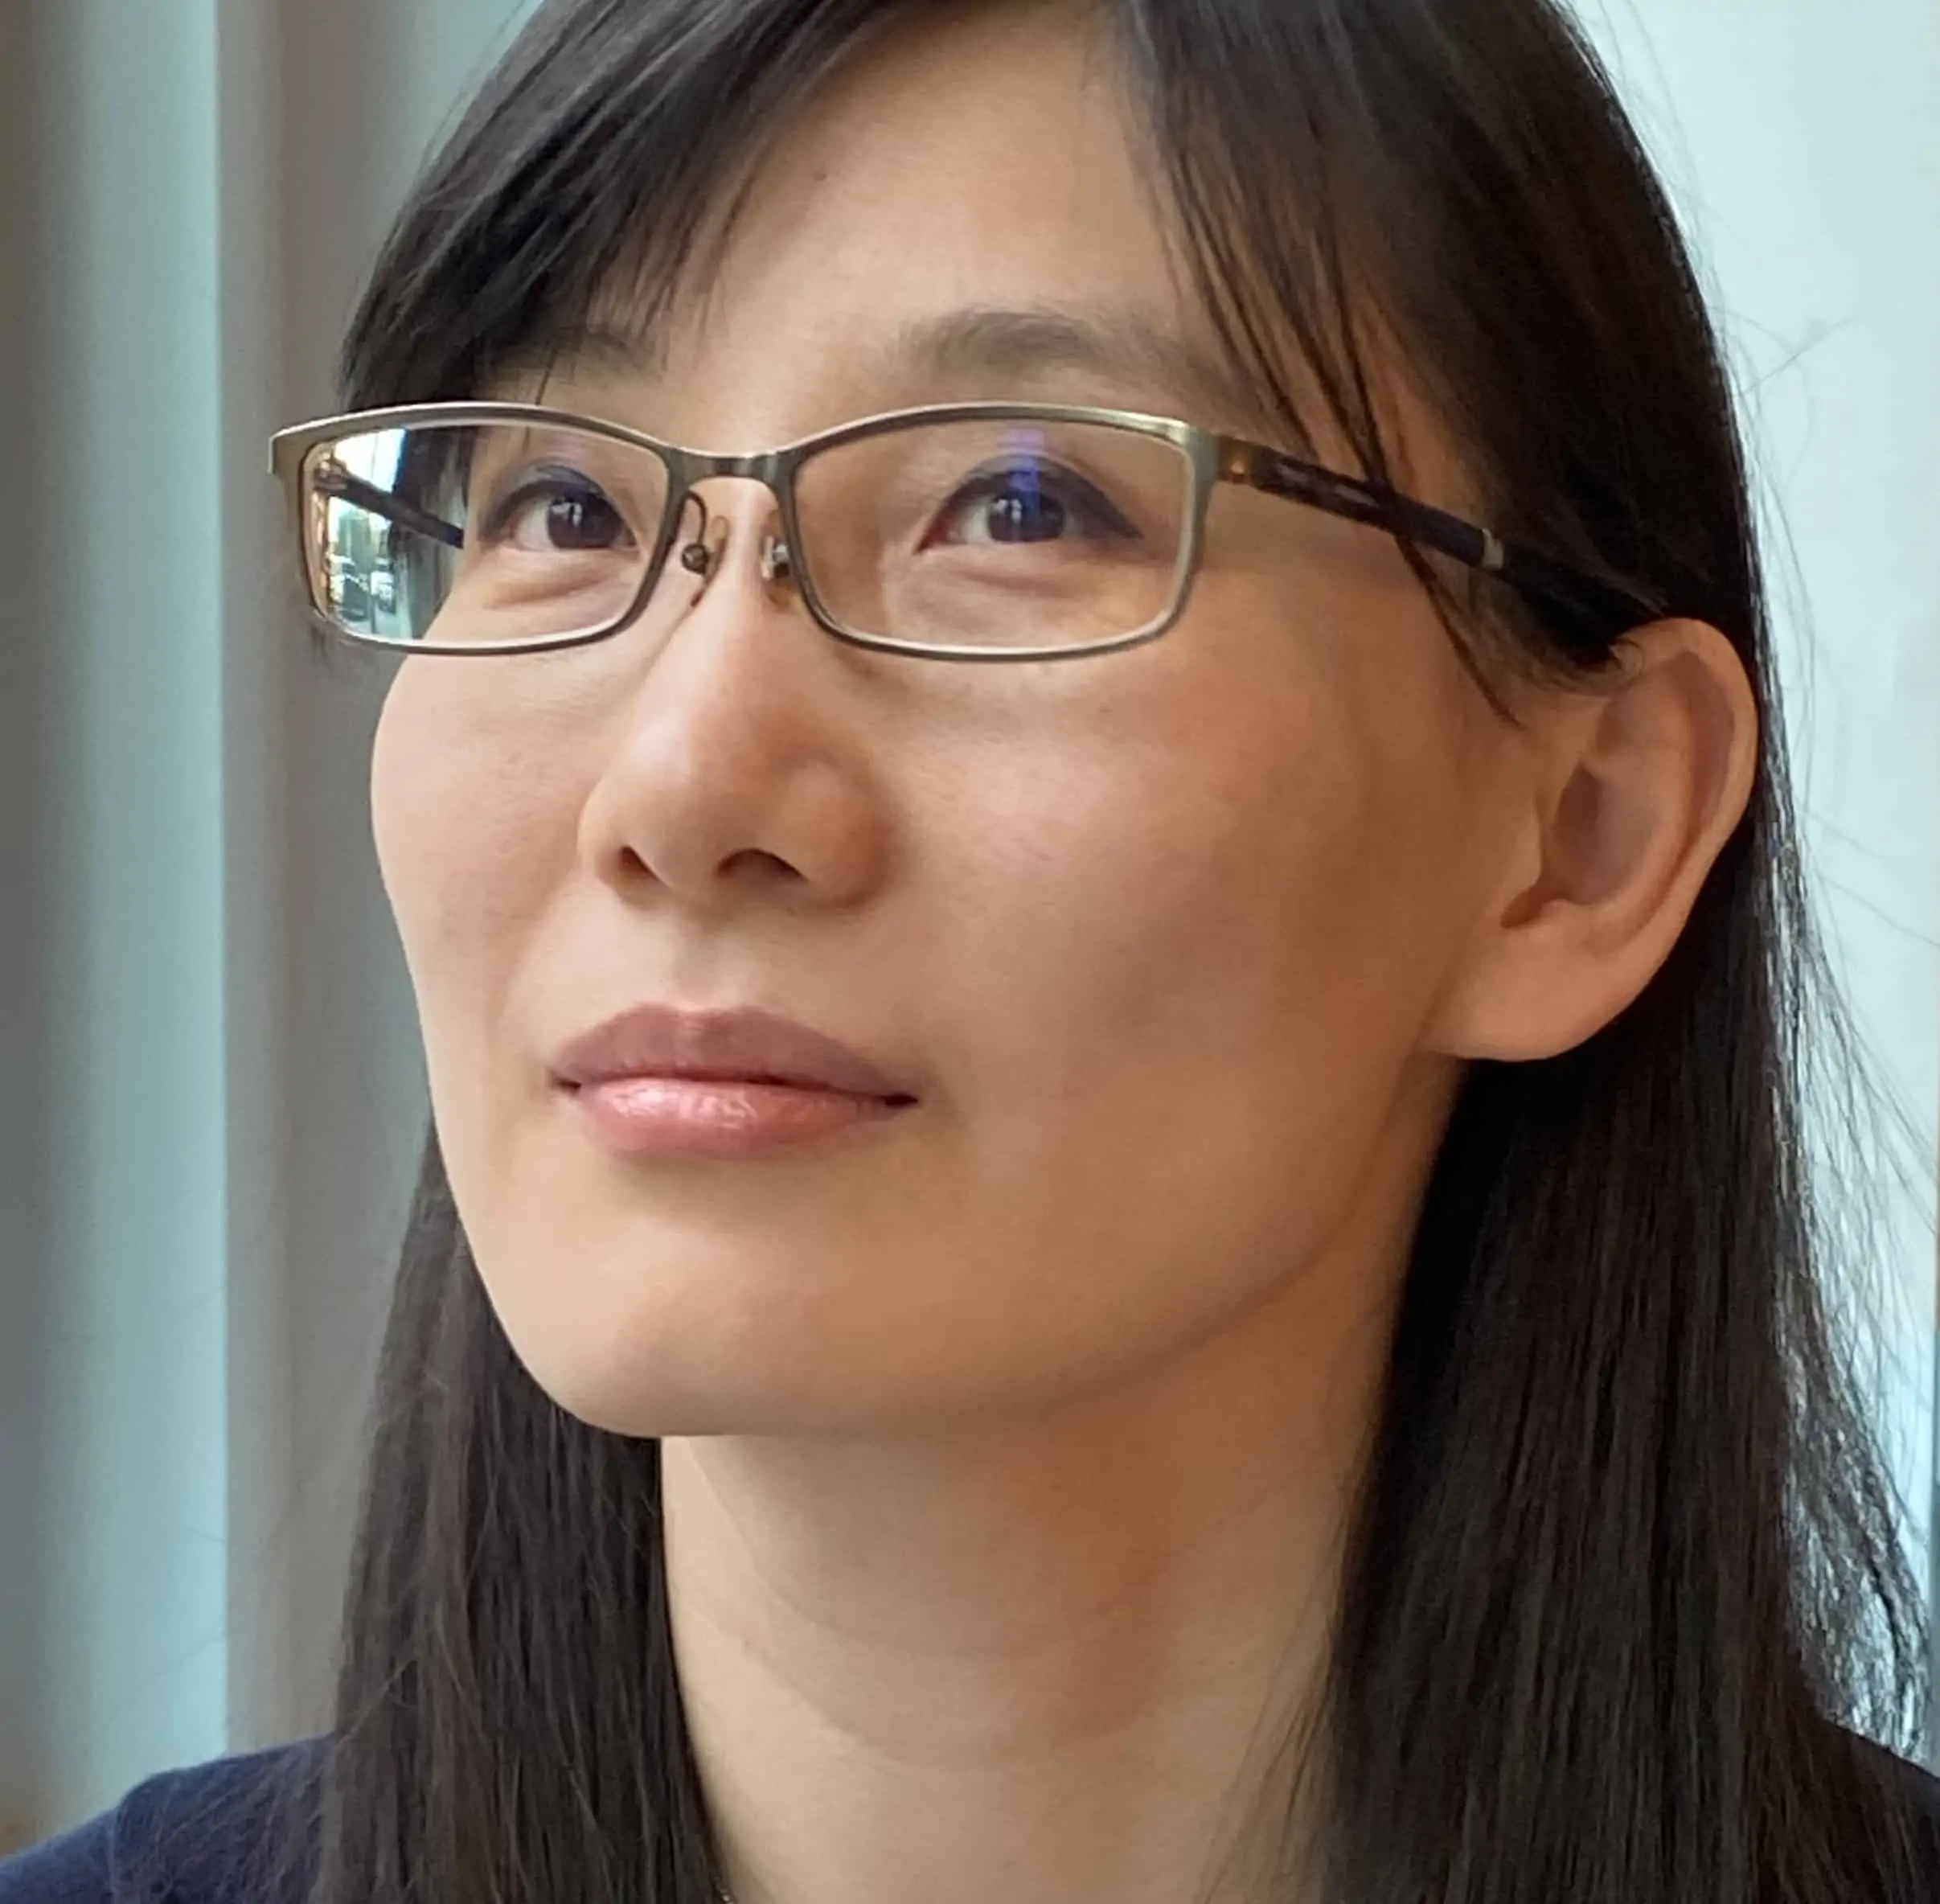 Dr. Li-Meng Yan